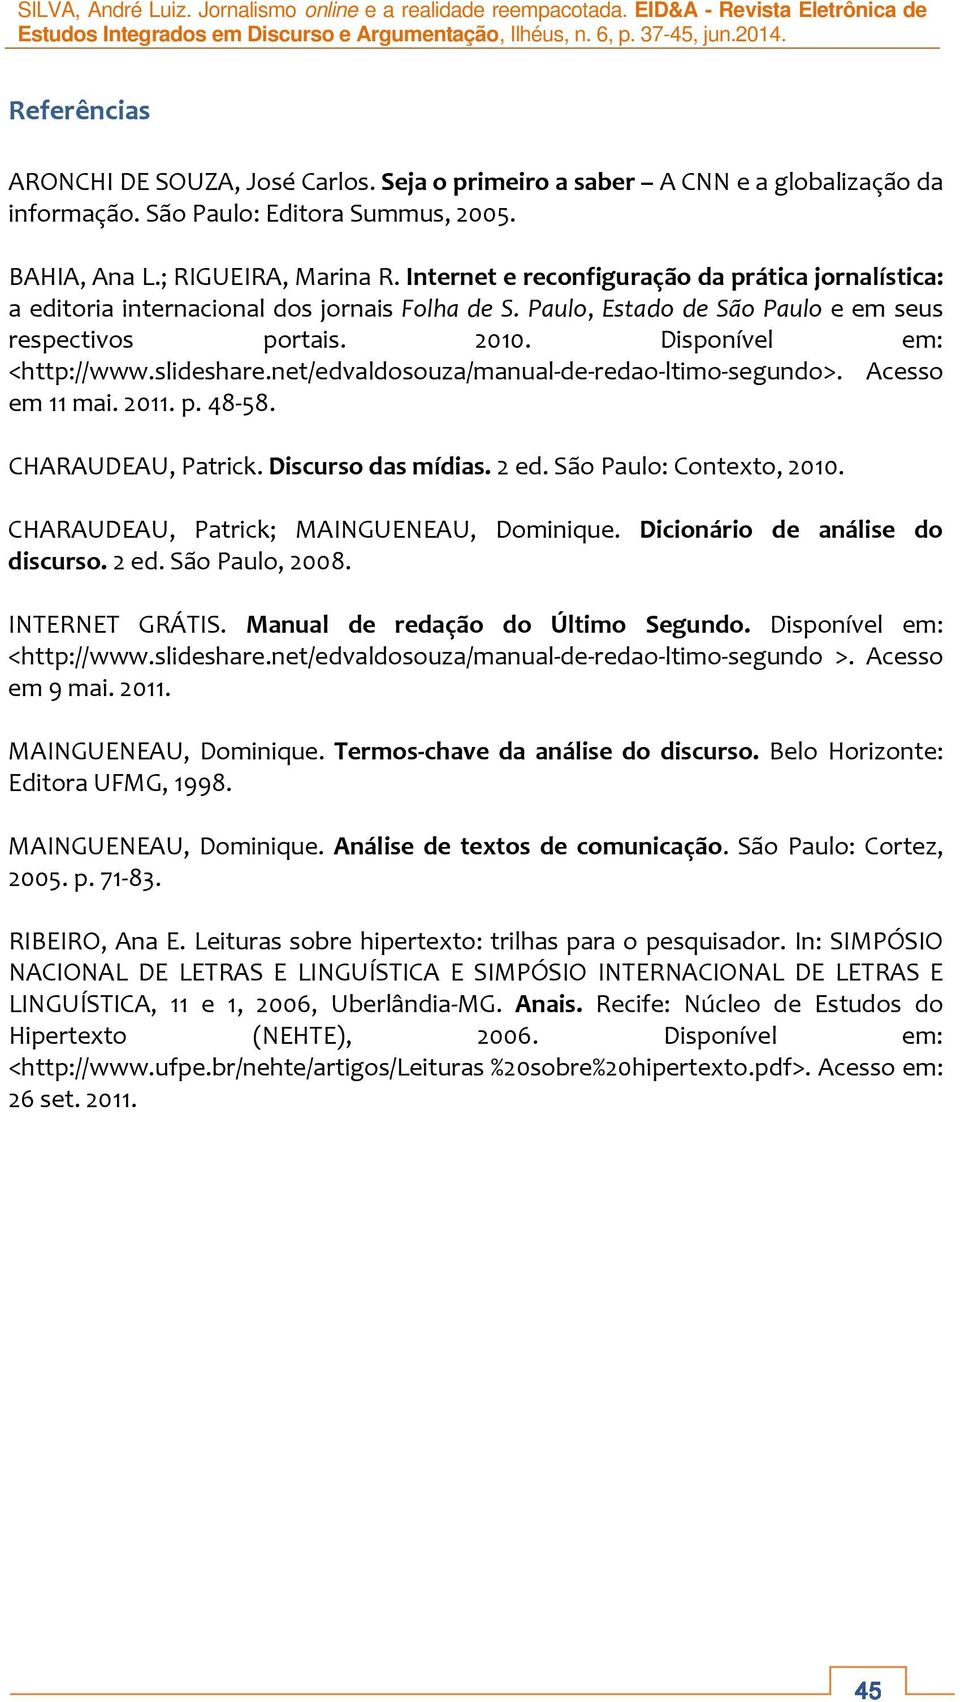 slideshare.net/edvaldosouza/manual-de-redao-ltimo-segundo>. Acesso em 11 mai. 2011. p. 48-58. CHARAUDEAU, Patrick. Discurso das mídias. 2 ed. São Paulo: Contexto, 2010.